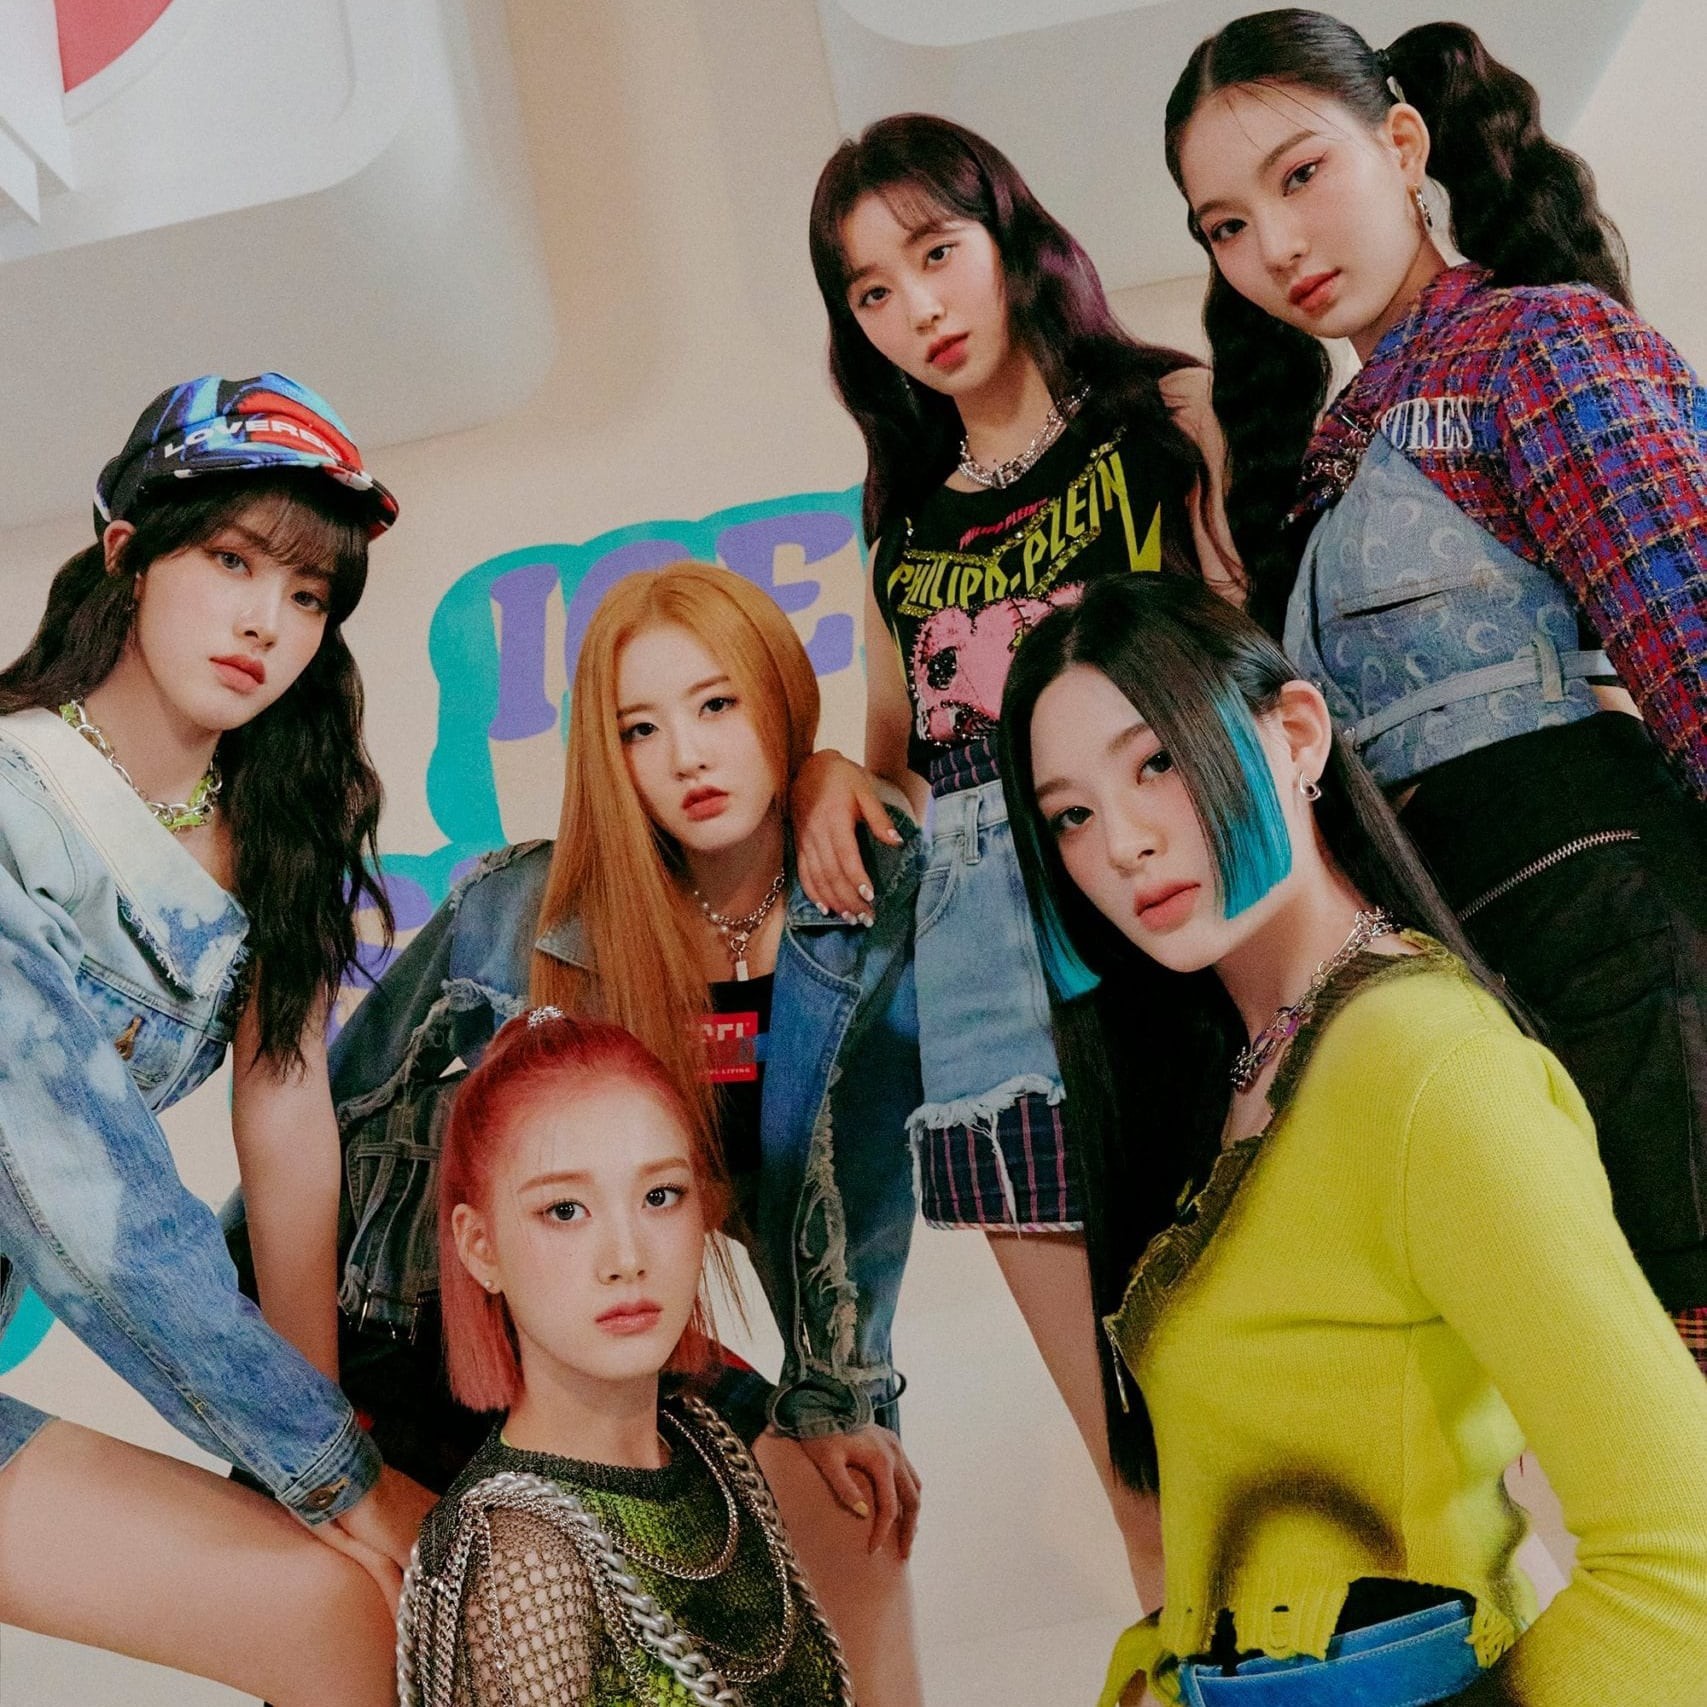 Netizen Hàn Quốc bình chọn 2 girlgroup Kpop gen4 đang ngày càng nổi tiếng hơn